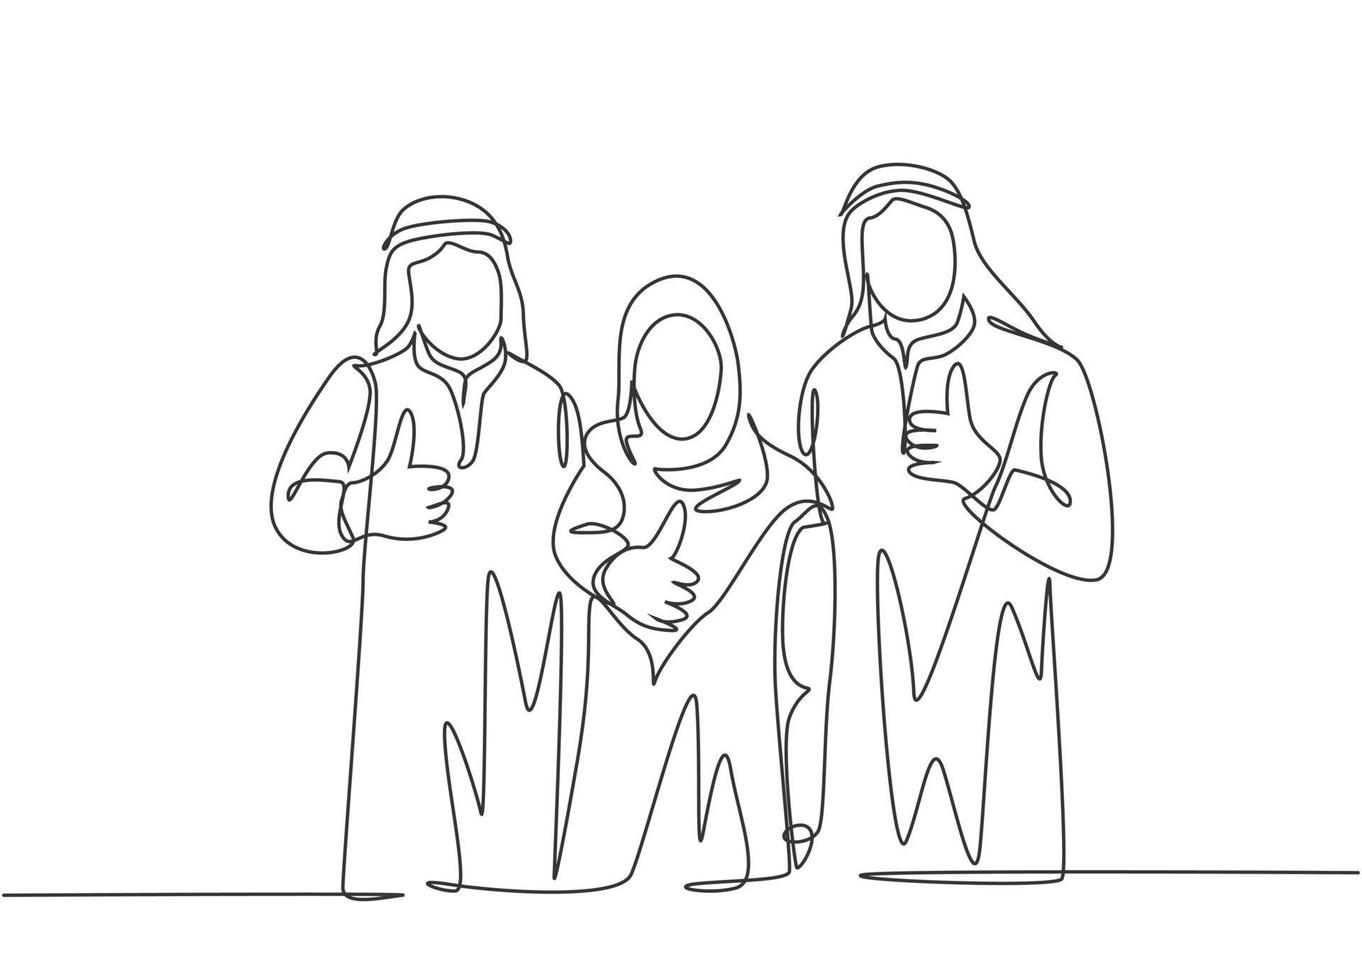 um desenho de linha contínua de jovens funcionários muçulmanos felizes fazendo um gesto de polegar para cima para celebrar a promoção no emprego. shemag de roupas islâmicas, lenço, keffiyeh. ilustração em vetor desenho desenho de linha única